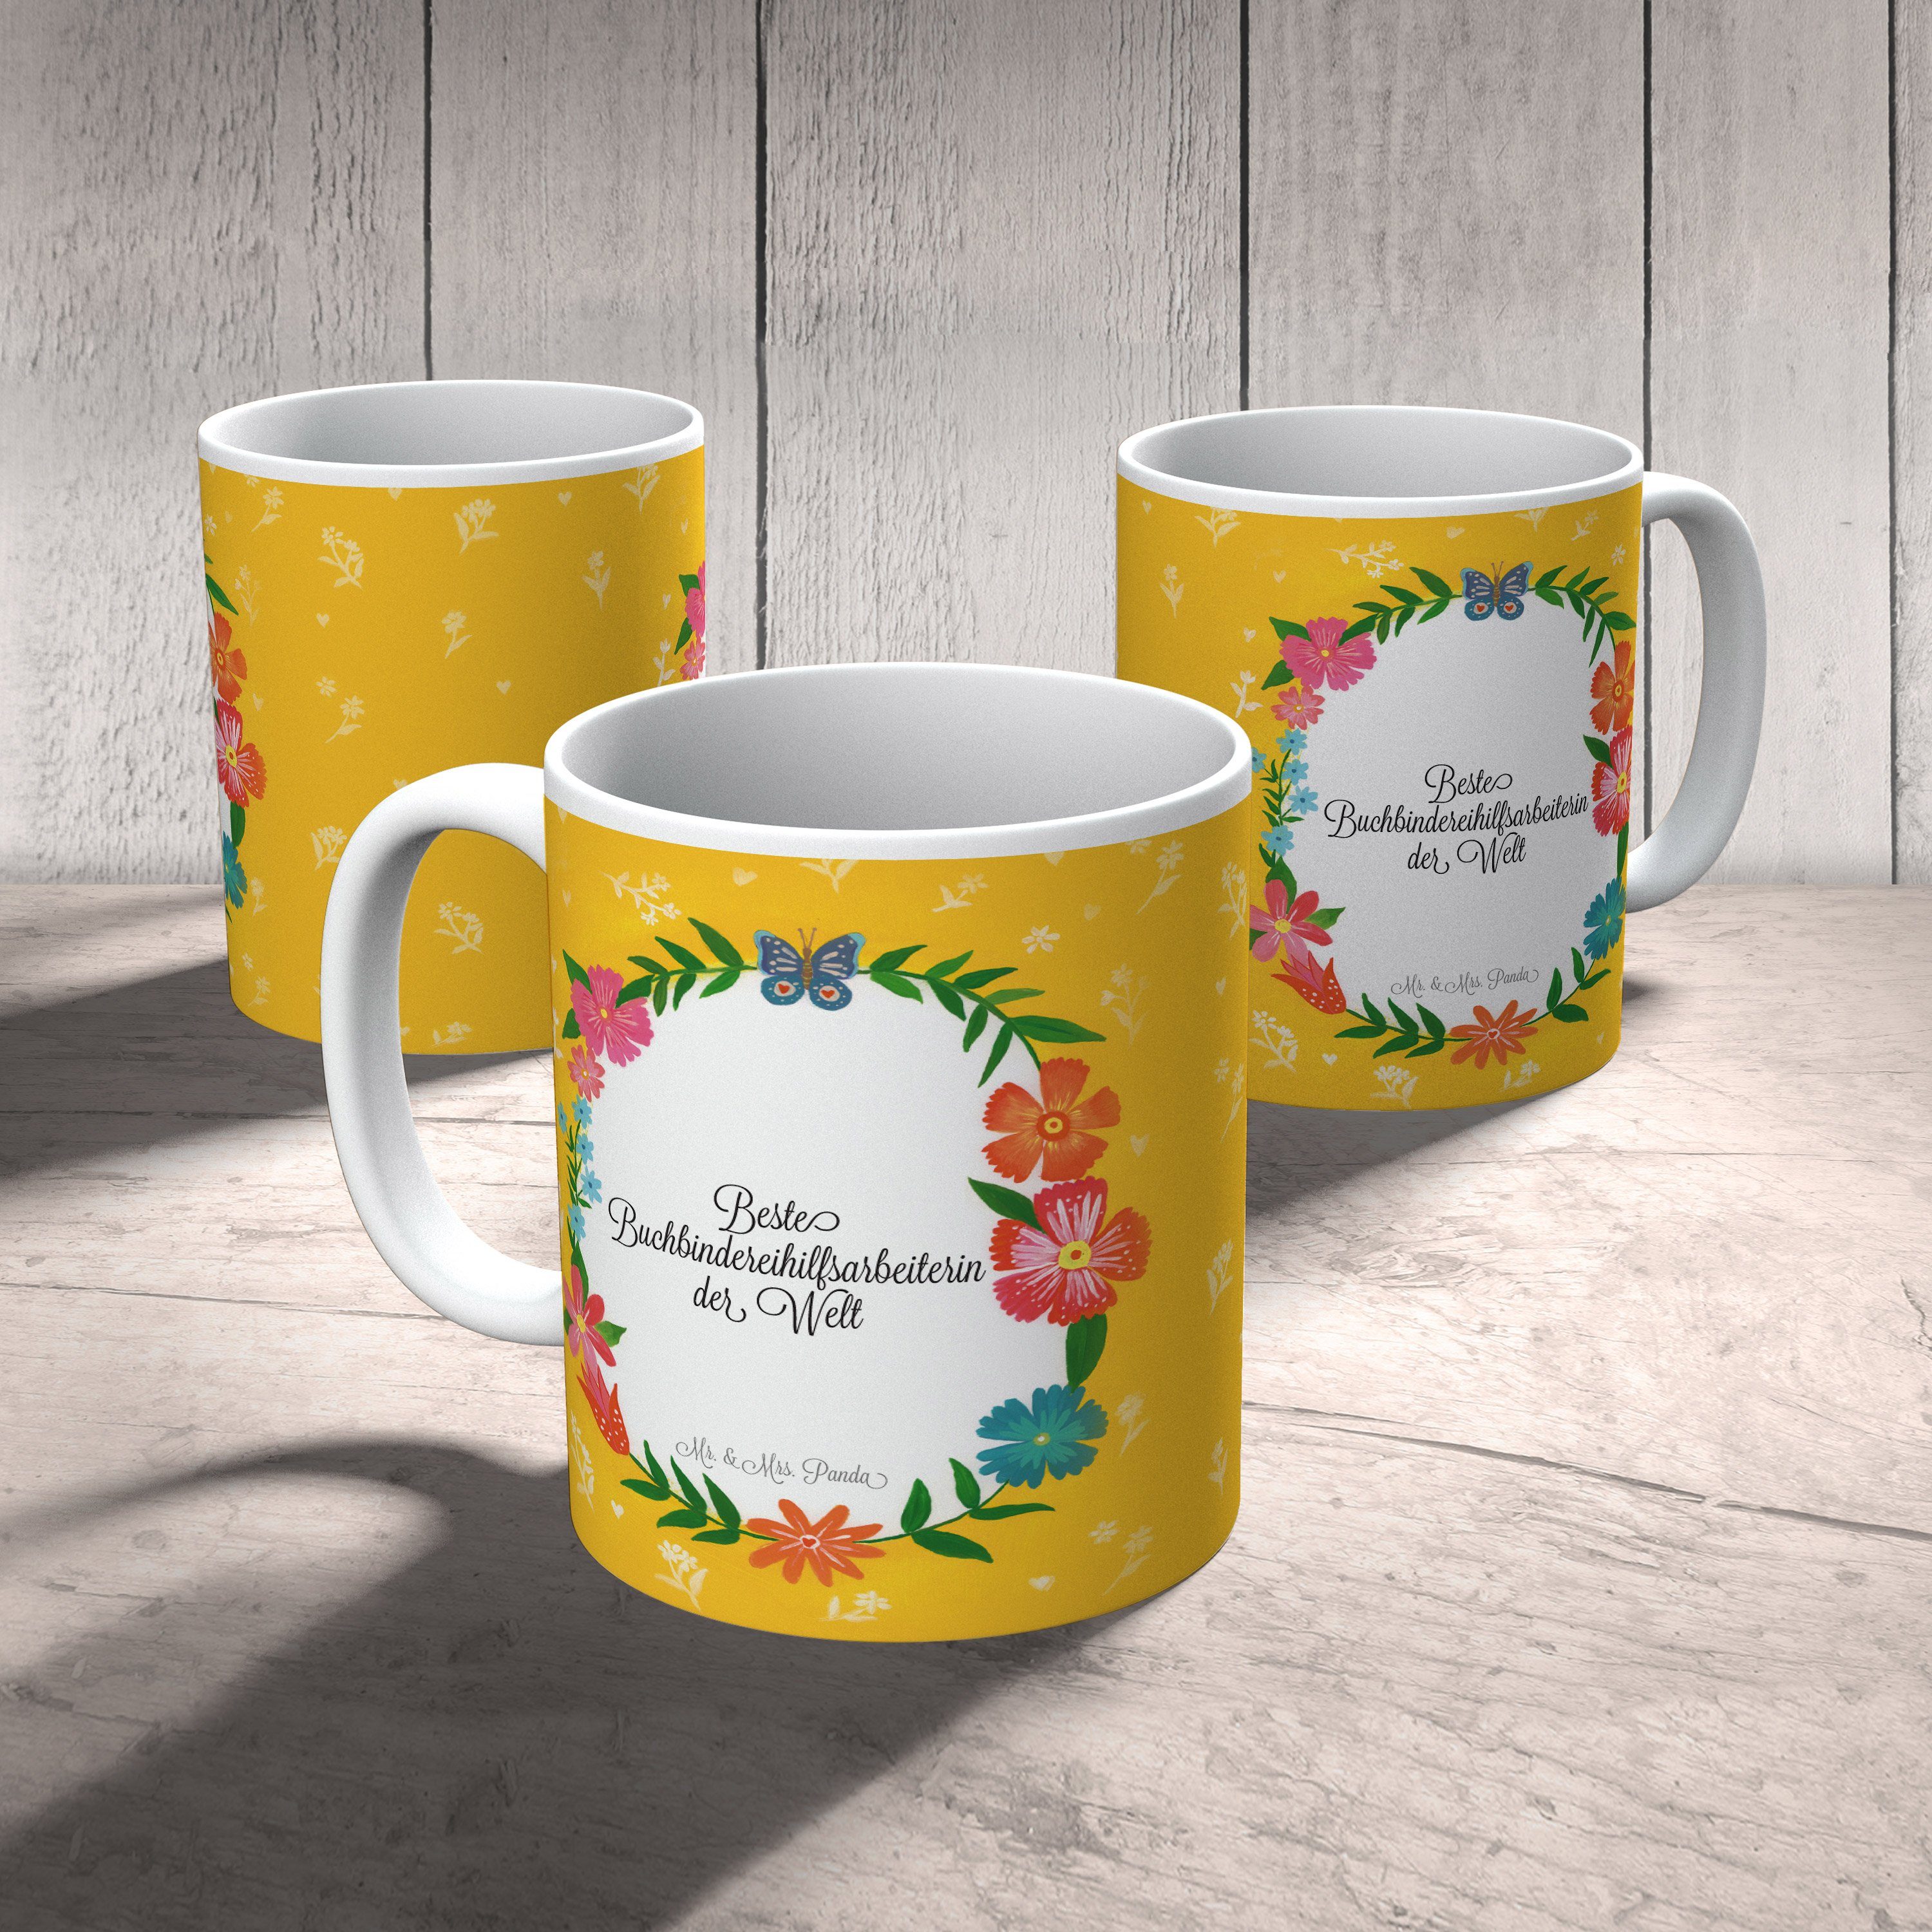 Mr. & Mrs. Panda Schenken, - Geschenk, Tasse, Tasse Keramik Buchbindereihilfsarbeiterin Tasse Motive